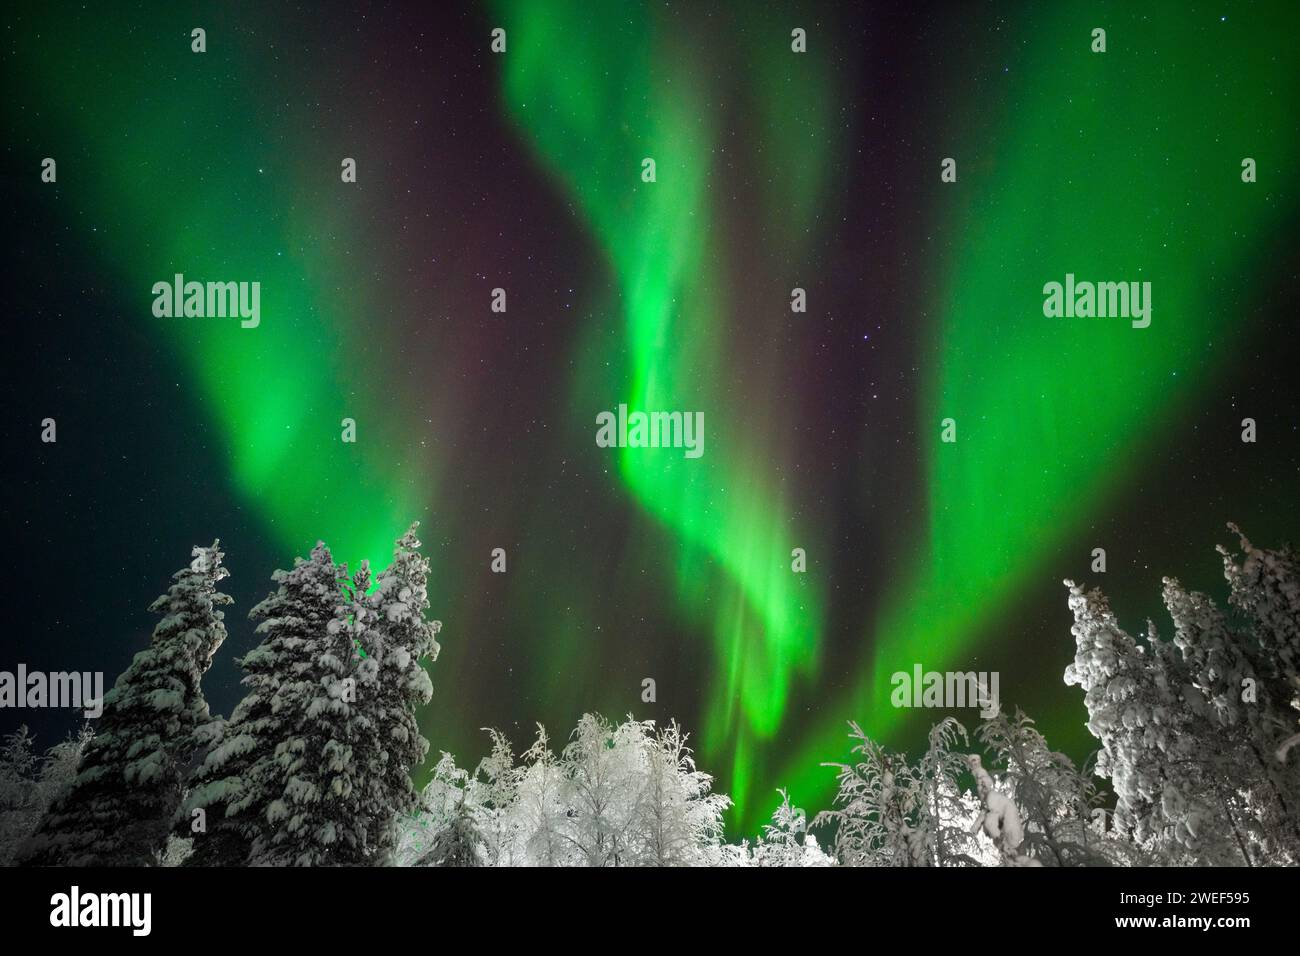 Les aurores boréales ou aurores boréales avec des arbres enneigés à Levi, dans la région de Laponie en Finlande. Banque D'Images